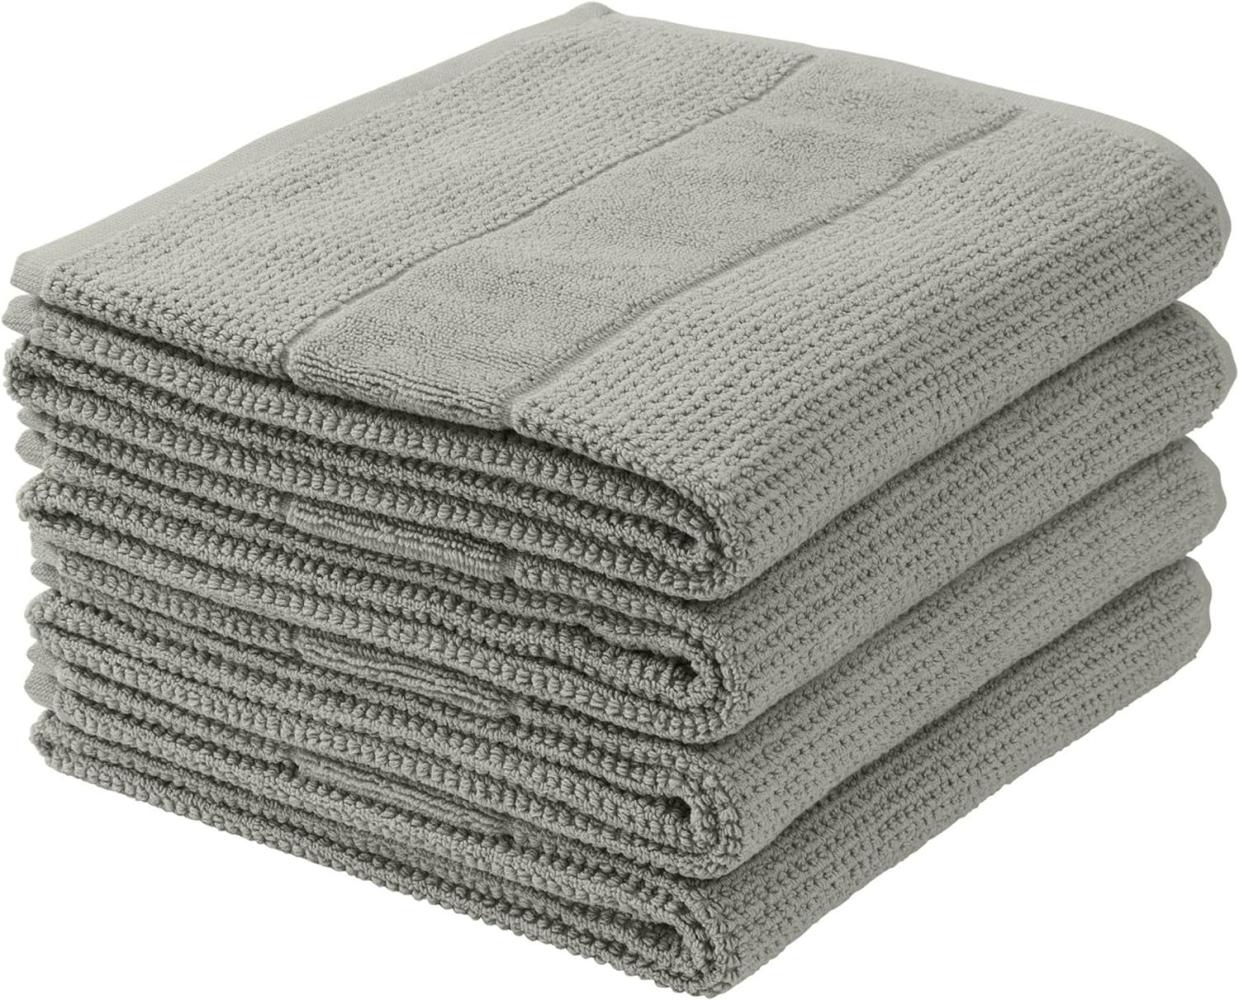 Schiesser Handtücher Turin im 4er Set aus 100% Baumwolle, nachhaltig und fair produziert, Farbe:Hellgrau, Größe:50 cm x 100 cm Bild 1